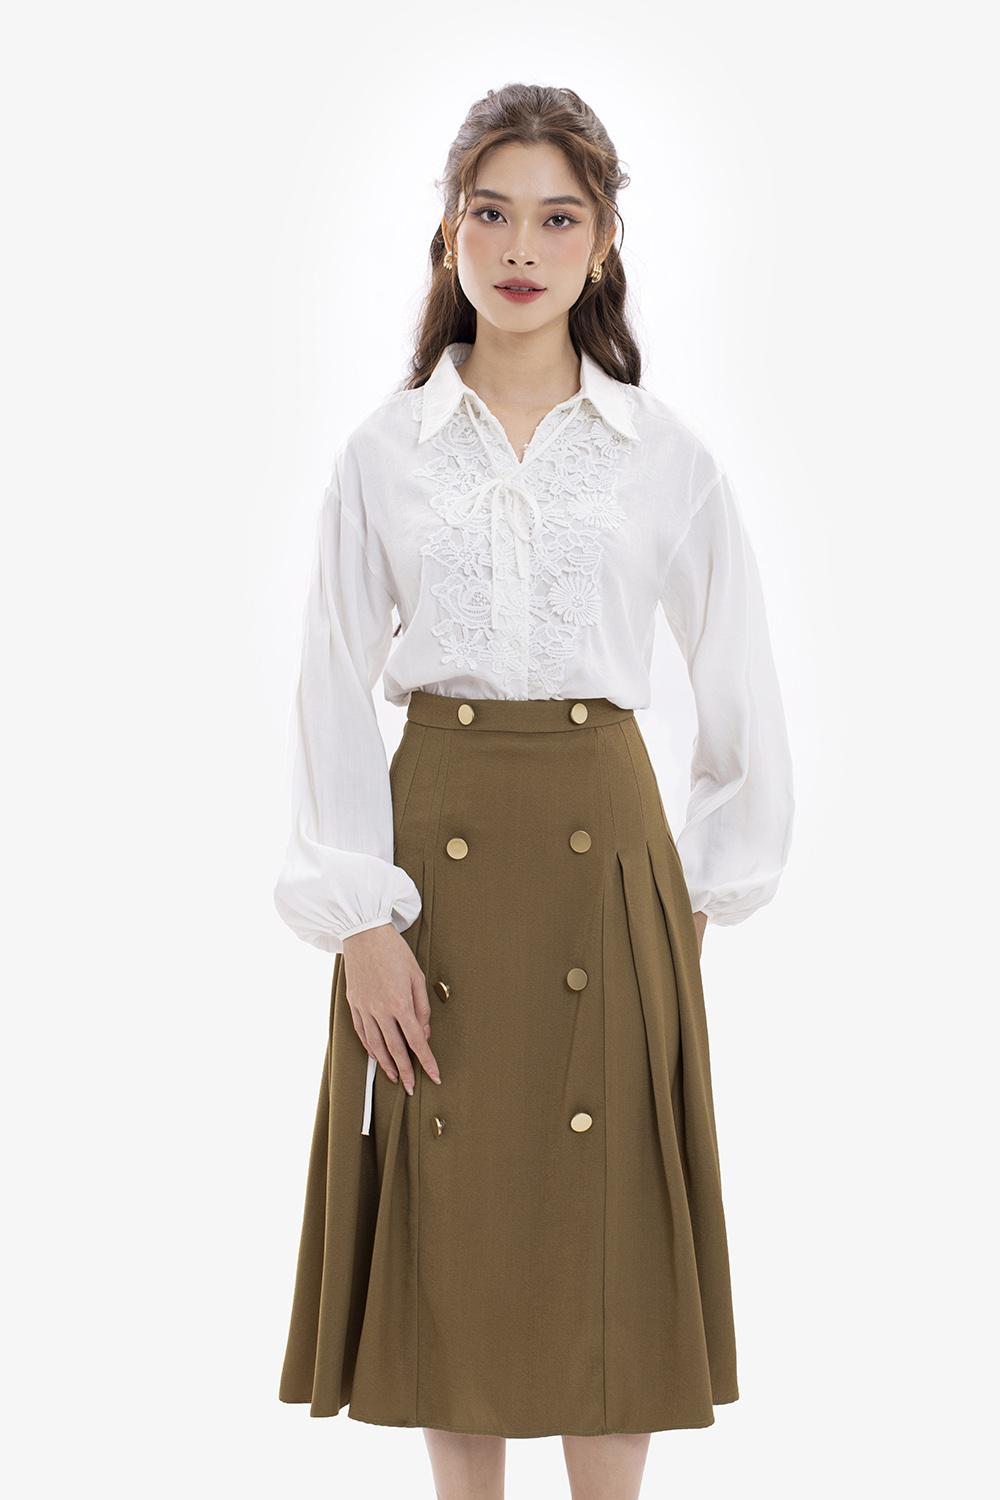 Chân váy caro dài lưng cao phối nút phong cách retro | Shopee Việt Nam